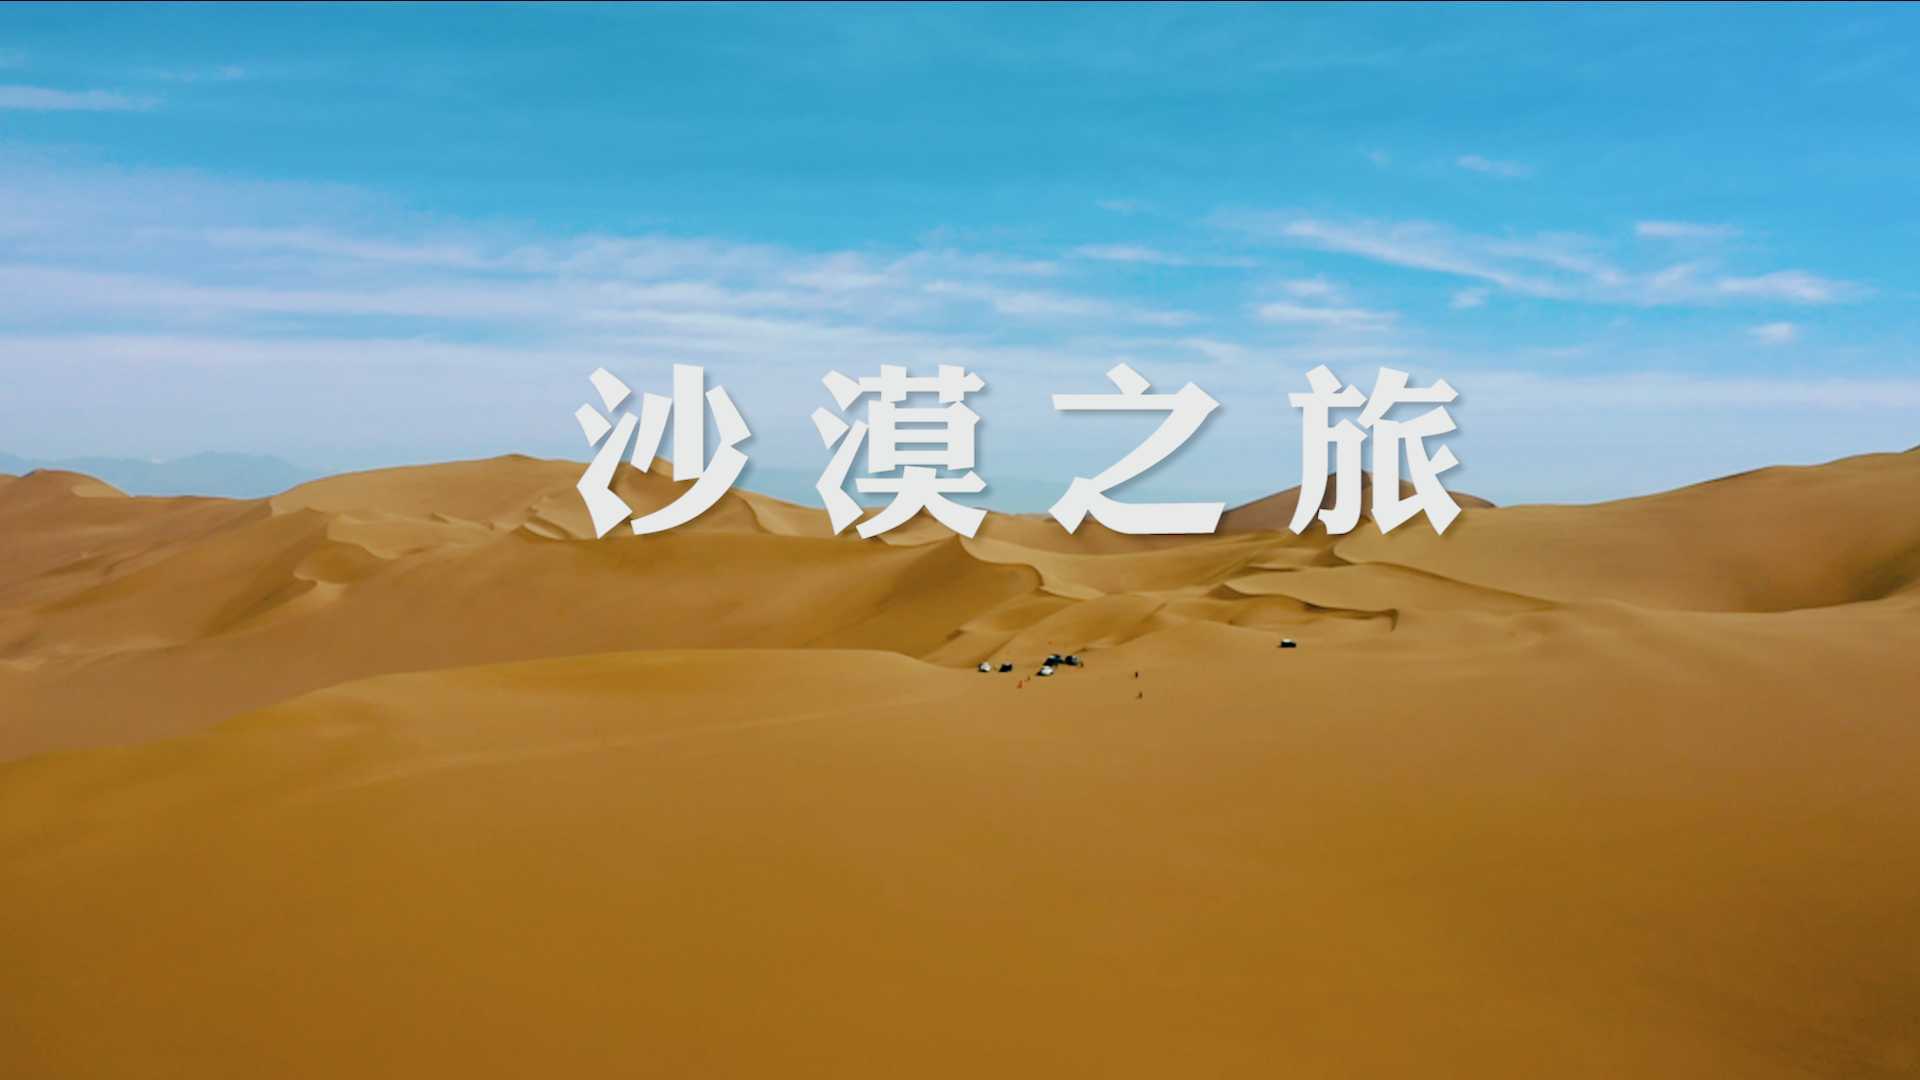 【沙漠之旅】沙漠、西海、来一场短暂邂逅